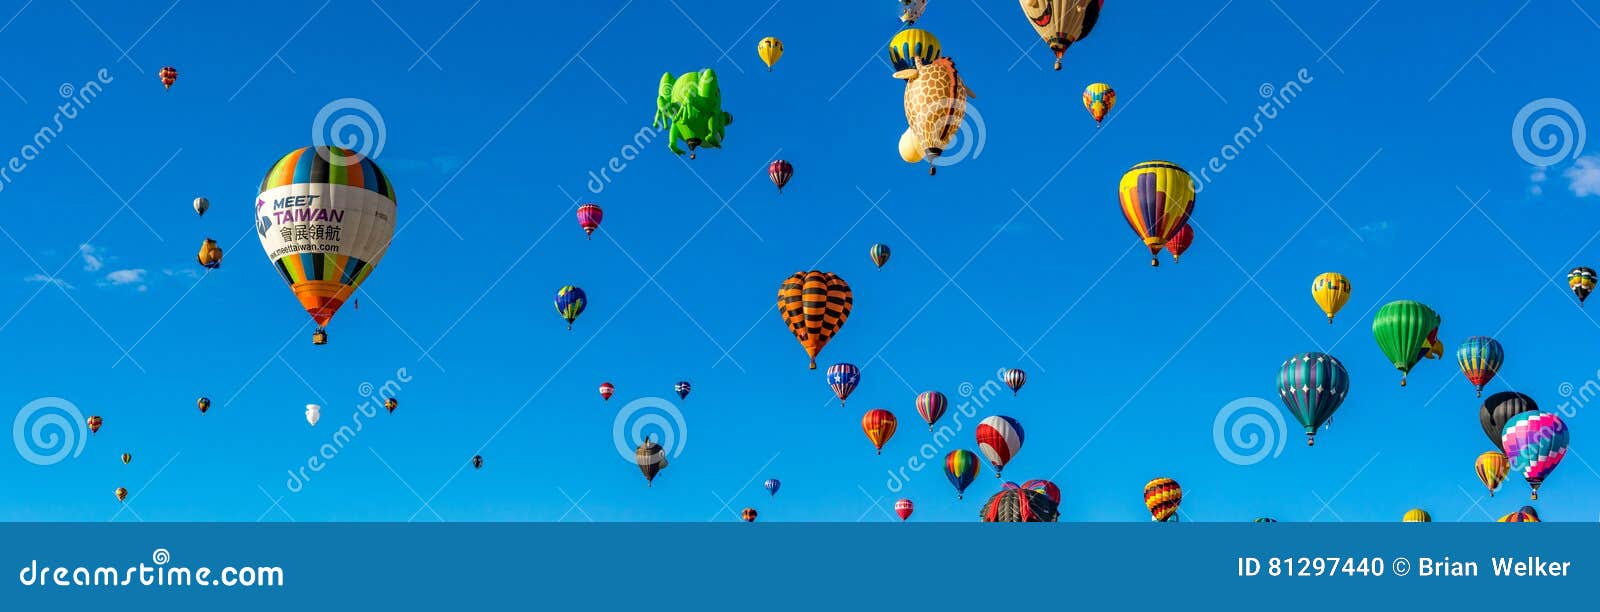 albuquerque hot air balloon fiesta 2016